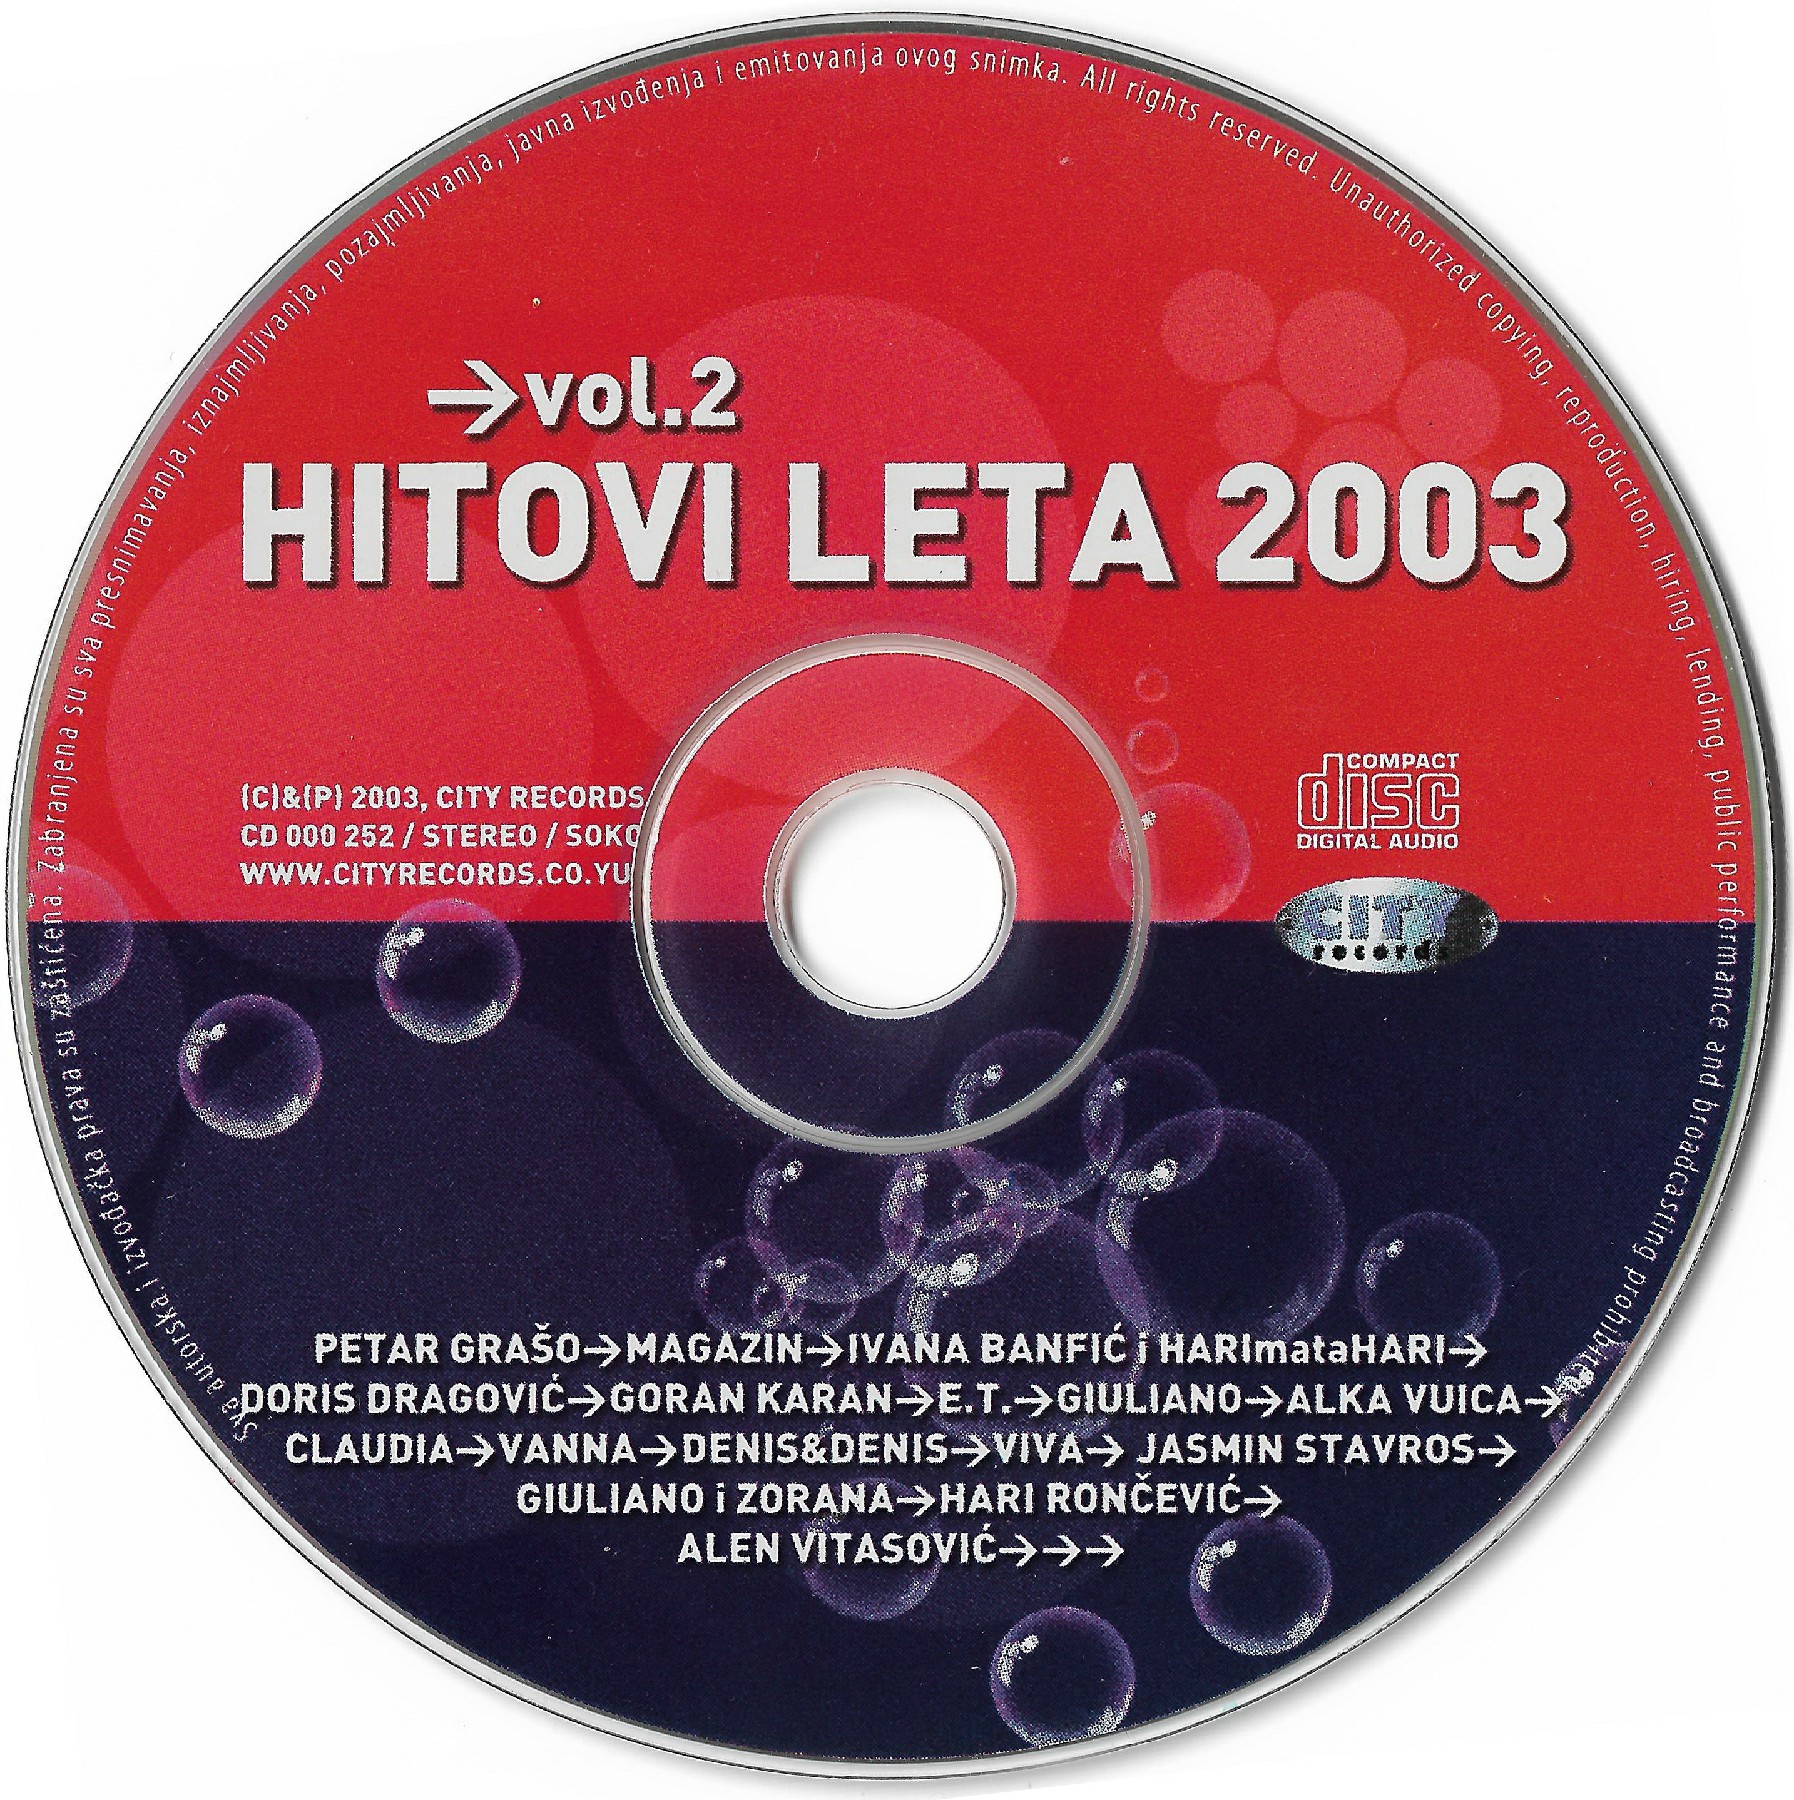 HL 2003 Vol 2 5